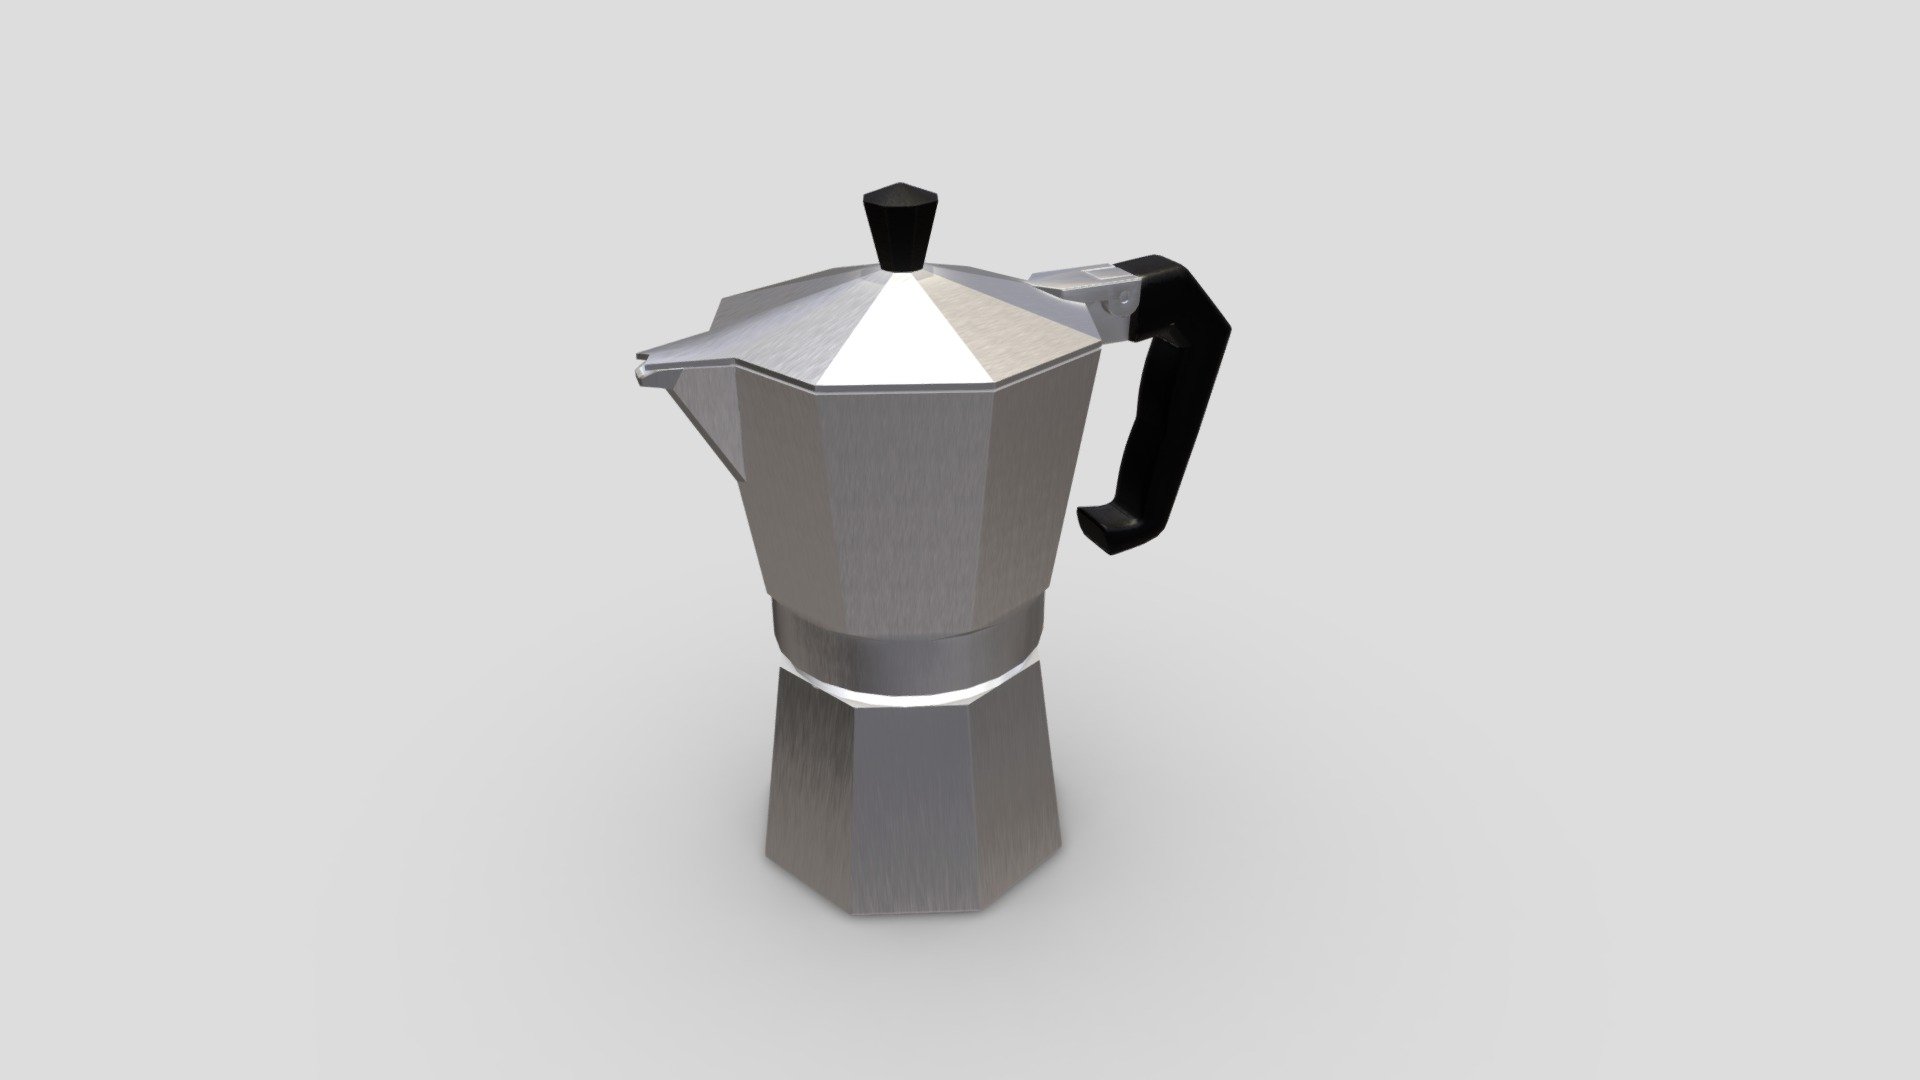 low poly 3d model of metalic italian coffee maker - Moka Pot Coffee maker - Buy Royalty Free 3D model by assetfactory 3d model